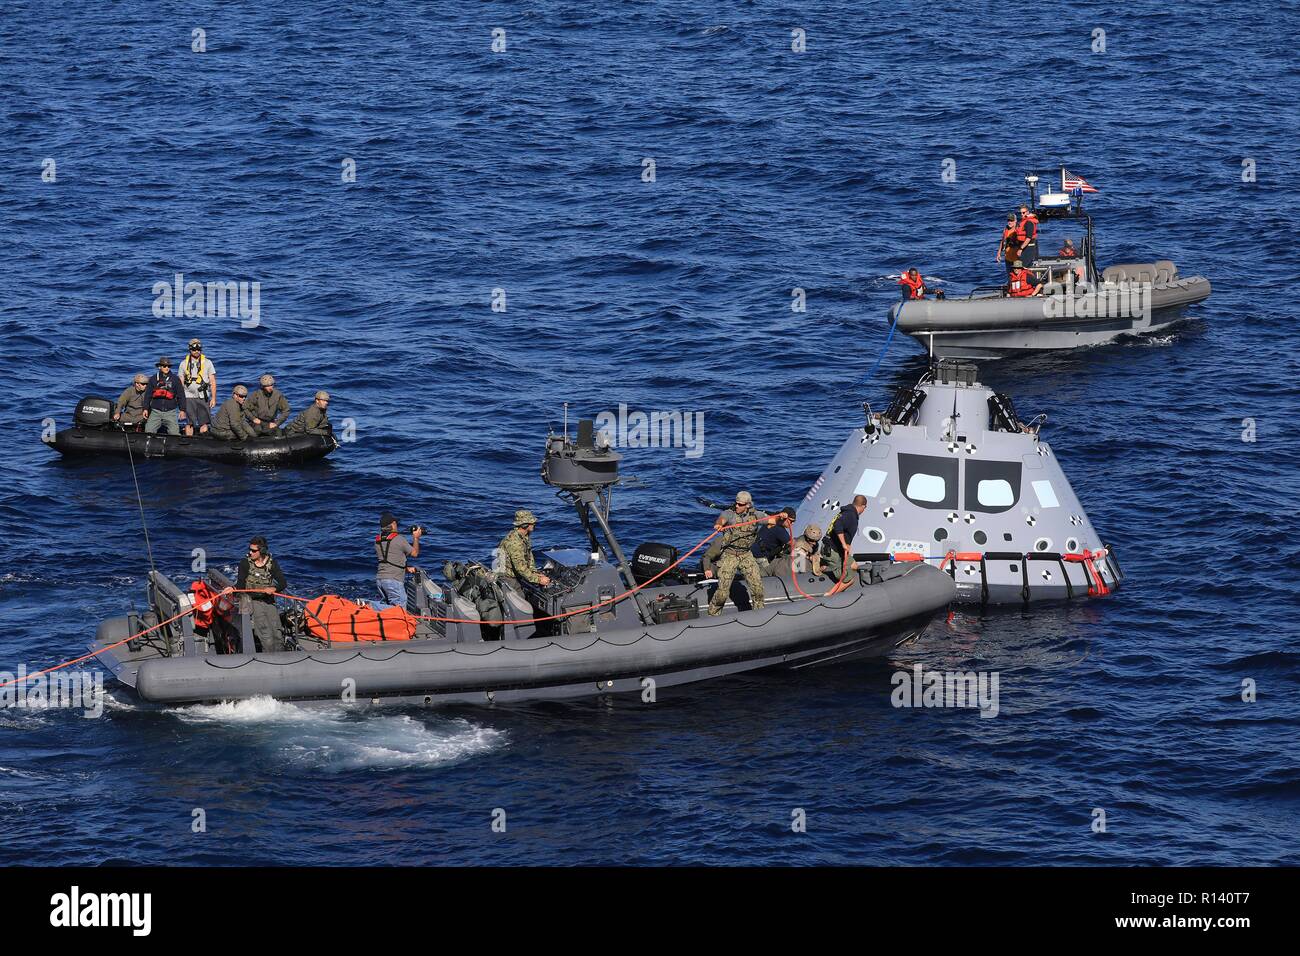 La NASA squadra di recupero e U.S. Navy divers fissare un mock up versione di Orion la generazione successiva capsula spaziale che si preparano a portarlo nella ben coperta della USS John P. Murtha durante un oceano aperto prova di recupero 31 ottobre 2018 nell'Oceano Pacifico. La NASA e gli Stati Uniti La marina non ha eseguito oceano aperto il recupero di un manned space capsule poiché il progetto Apollo negli anni sessanta e sono le procedure di test e la bulloneria che verranno utilizzate per recuperare il veicolo spaziale Orion dopo che schizza verso il basso nell'Oceano Pacifico seguendo il futuro dello spazio profondo missioni di esplorazione. Foto Stock